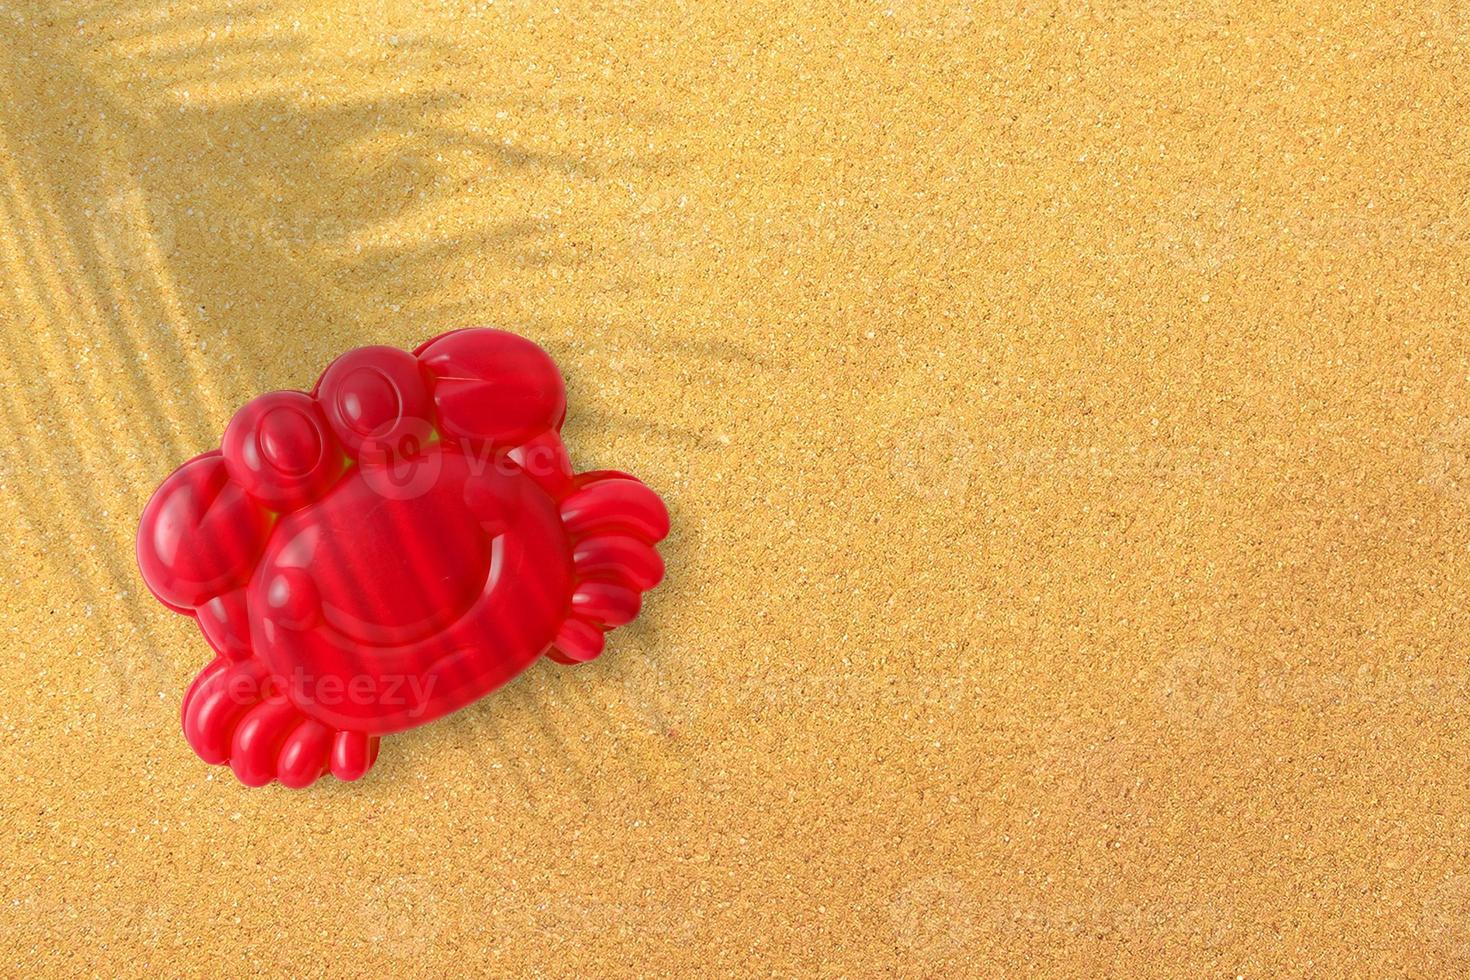 camarones de plástico rojo sobre fondo de playa de arena, primer plano. juguetes infantiles para bañar a los bebés. juegos educativos para niños, educación preescolar. maquetación, preparación de juguetes para el diseñador o sitio web. foto